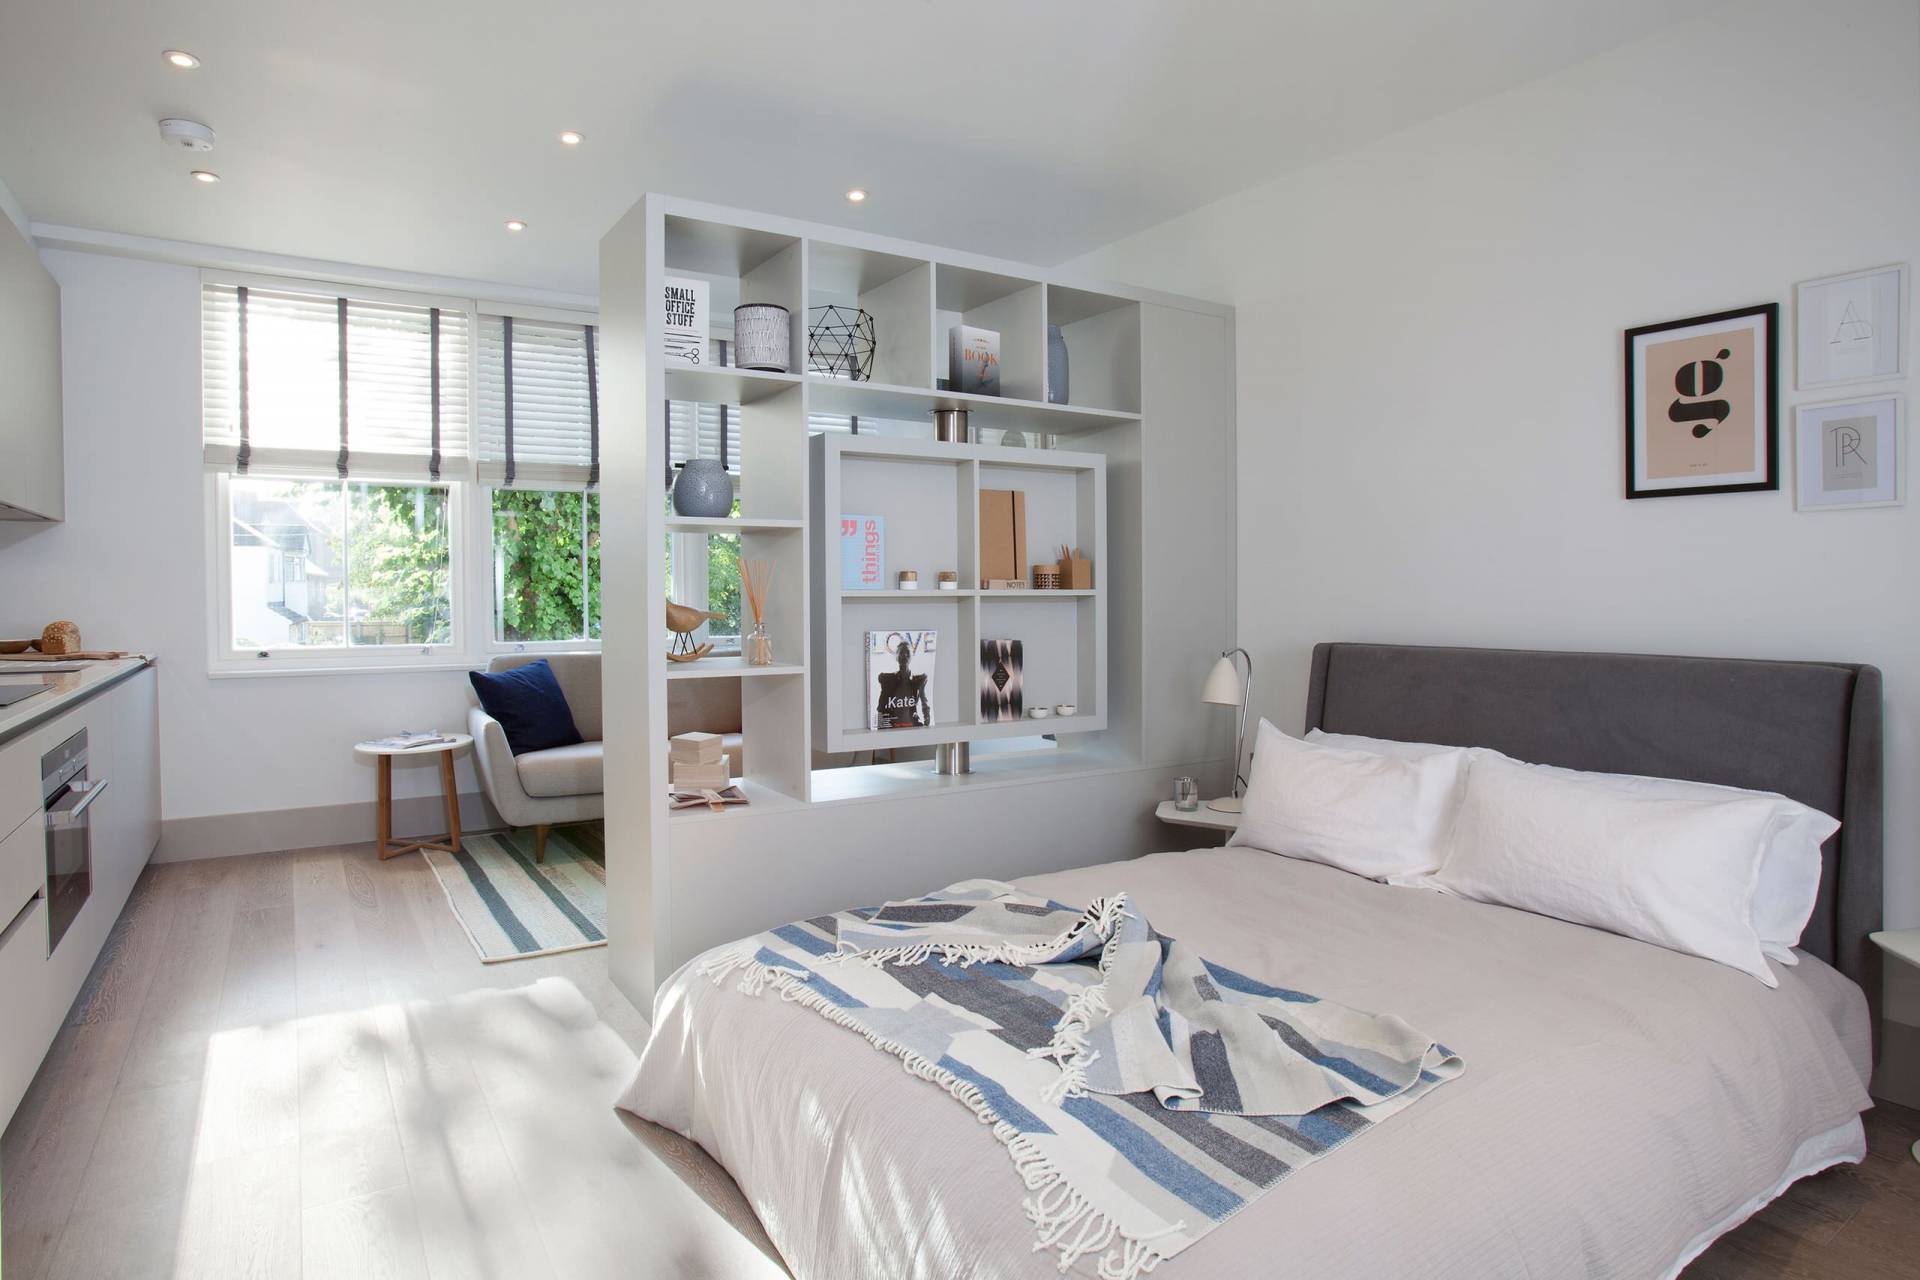 Việc chia phòng ngủ có thể giúp gia đình bạn tạo ra môi trường sống đa năng, vừa có không gian chung, vừa riêng tư. Tương lai dành cho ngôi nhà của bạn sẽ trở nên sáng sủa hơn - hãy cùng theo dõi những hình ảnh nhé.